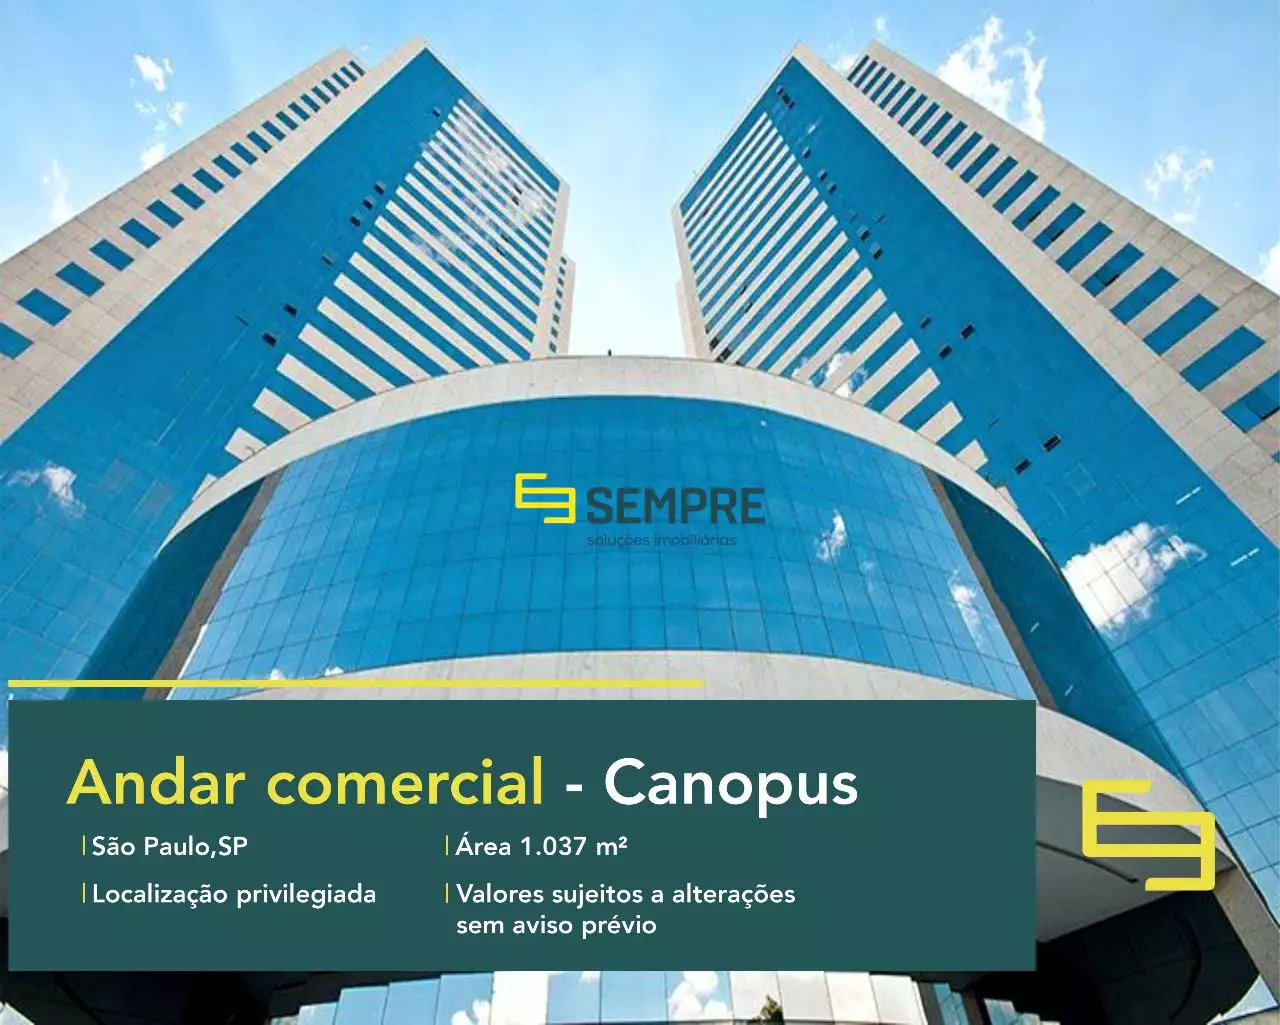 Andar comercial para alugar no Canopus - Torre Norte, excelente localização. O estabelecimento comercial conta com área de 1.037 m².